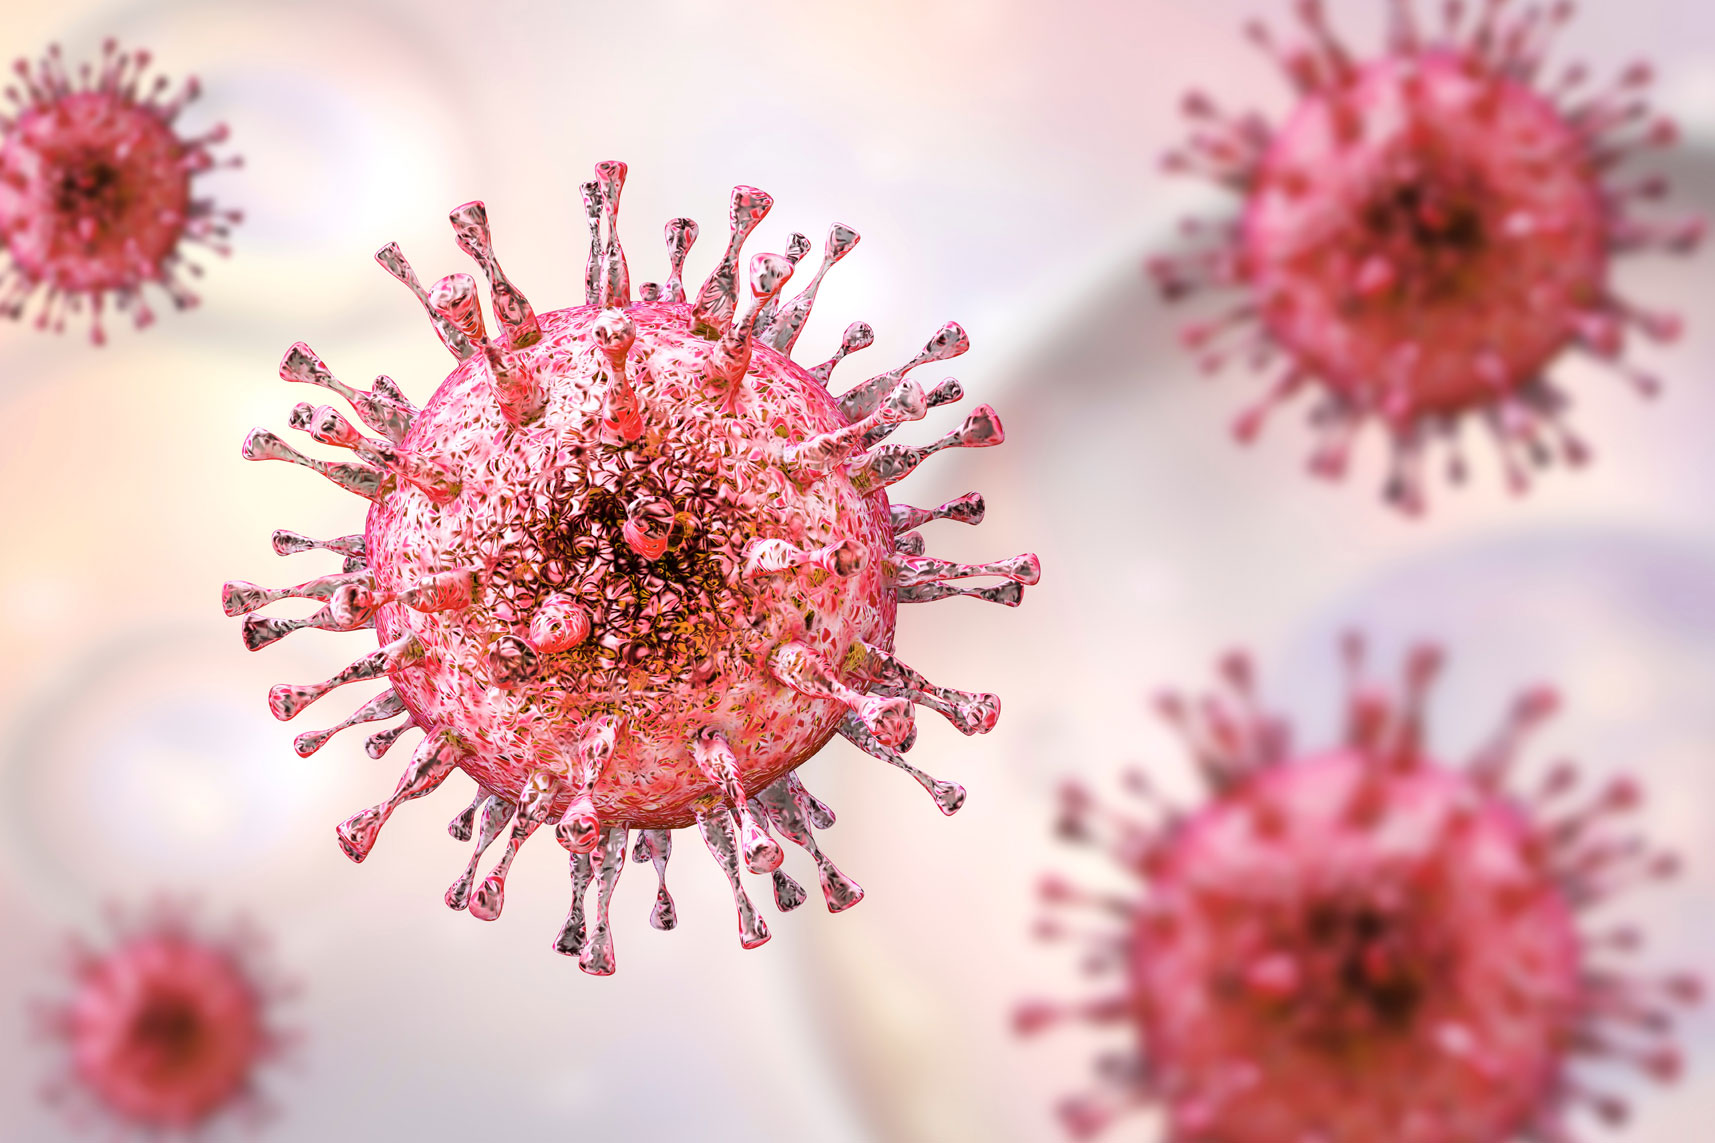 Sytomegaloviruksen (CMV) infektio: syyt, oireet ja hoito